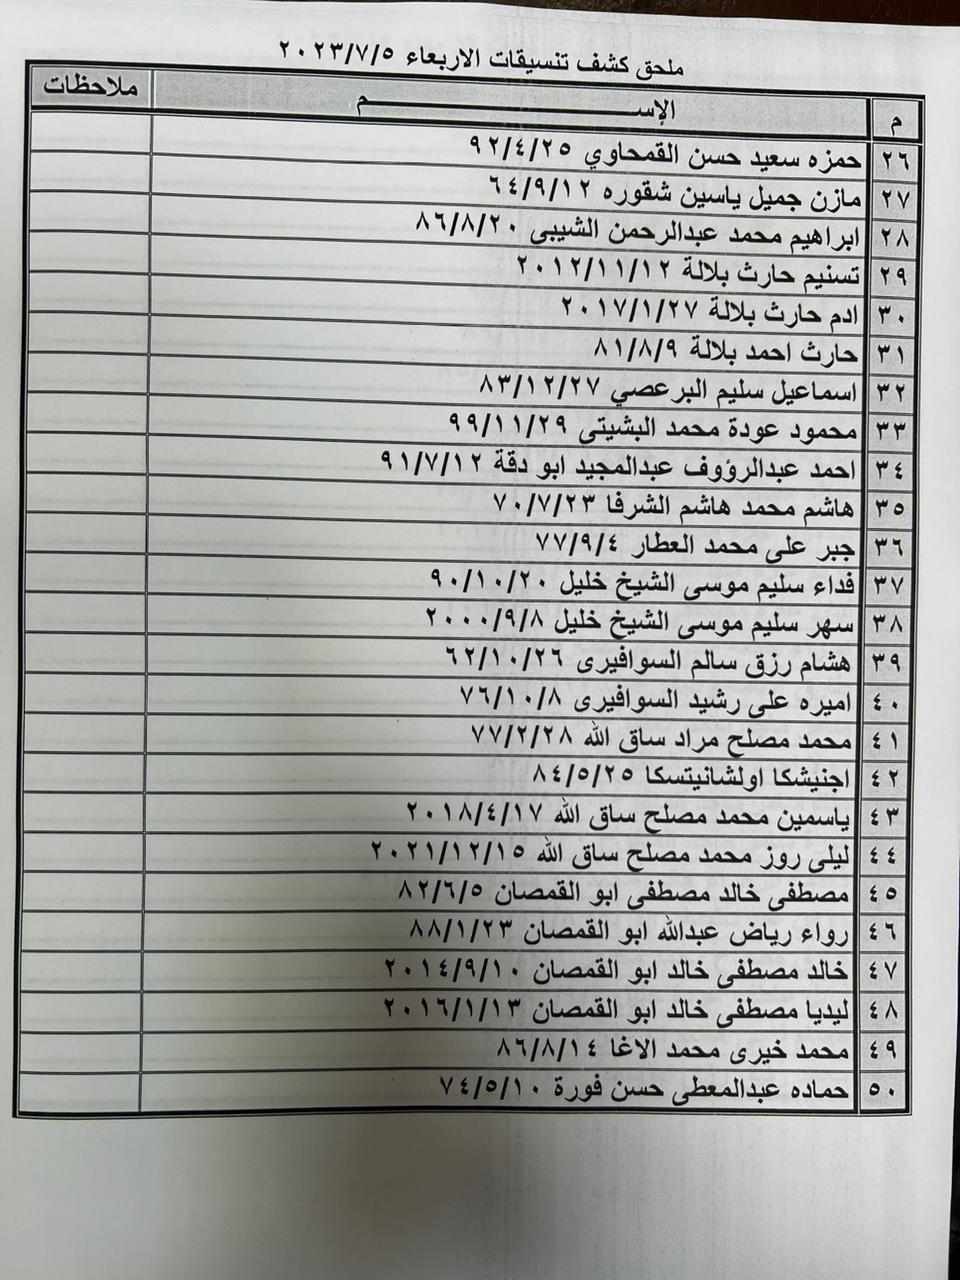 بالأسماء: ملحق كشف "التنسيقات المصرية" للسفر عبر معبر رفح الأربعاء 5 يوليو 2023